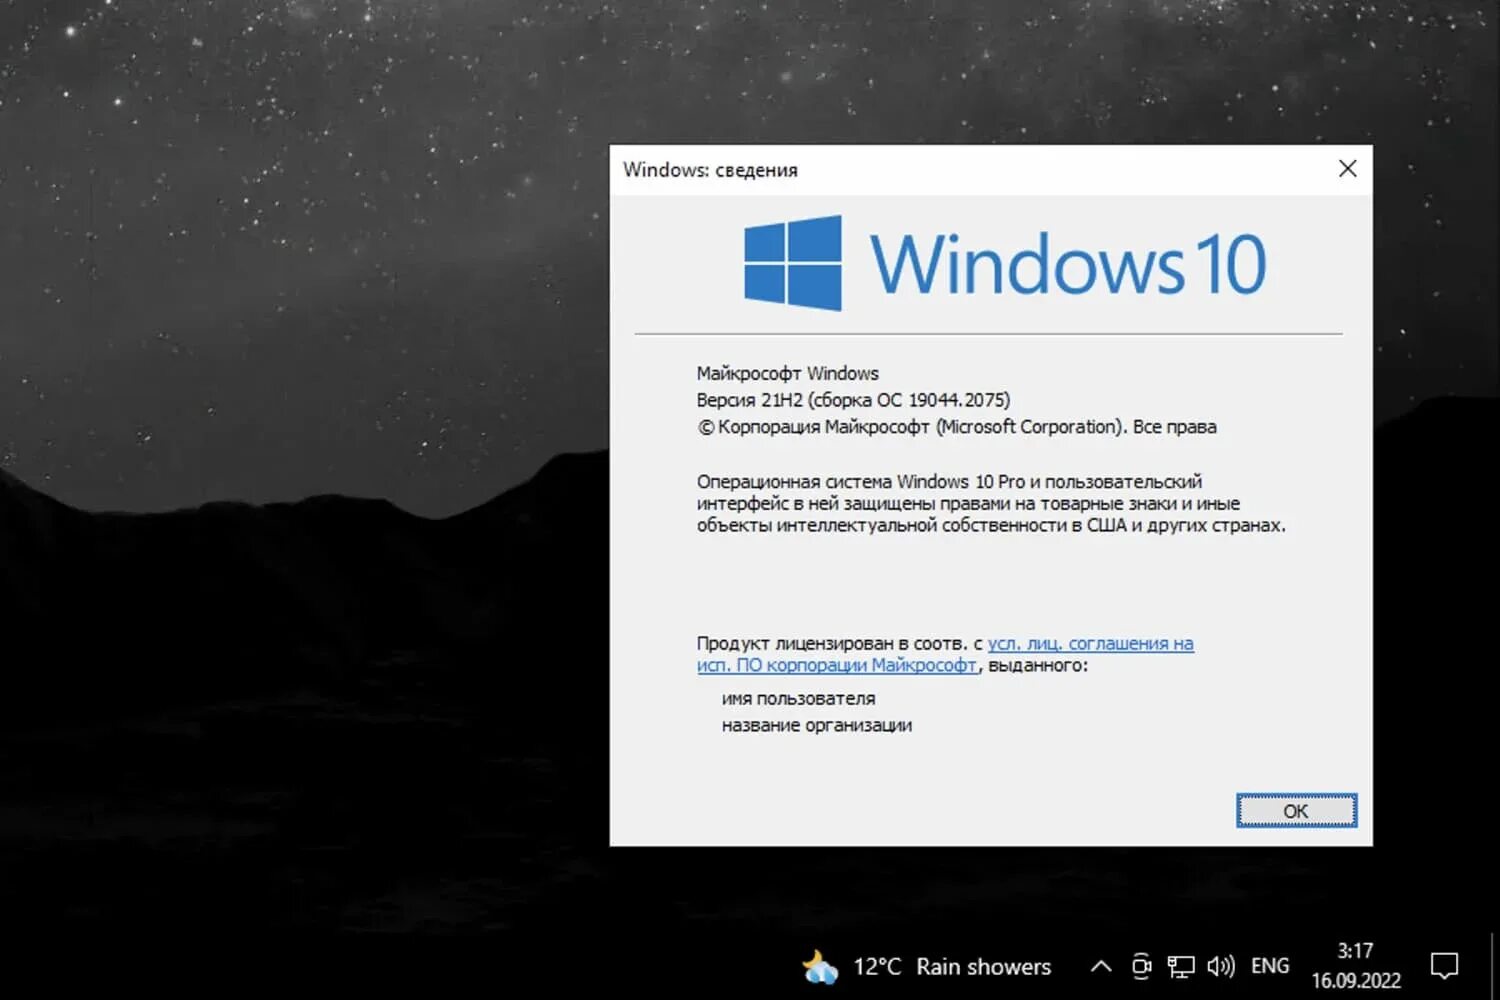 Виндовс 10 21h2. Windows 10, версия 21h1. Последняя версия виндовс 10. Обновление Windows. Версия 10 19